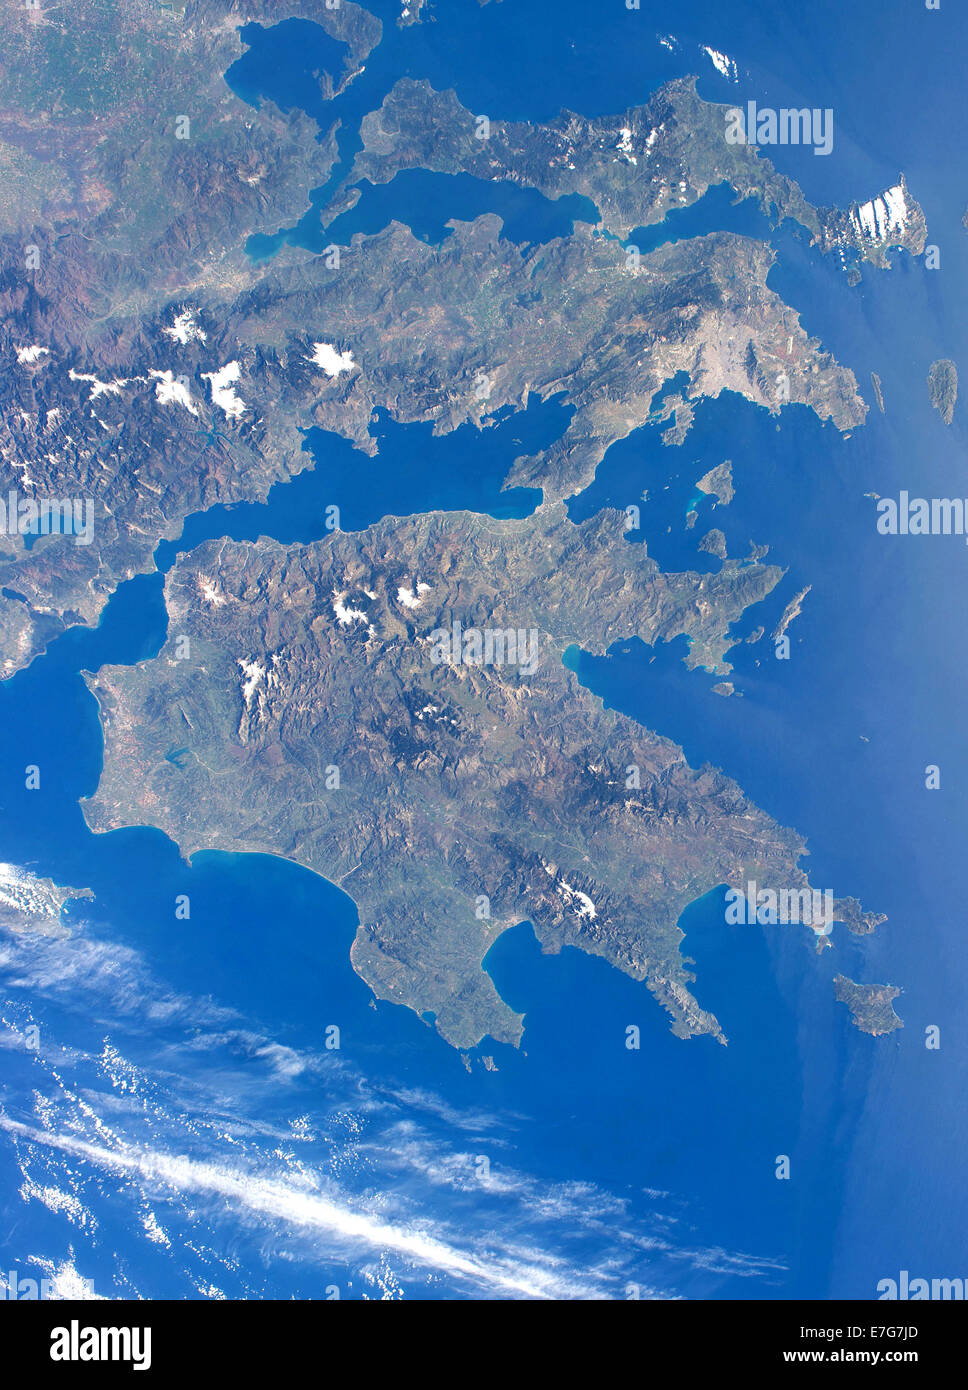 En Grèce, photo aérienne de la Grèce, de la nation de la Grèce Banque D'Images